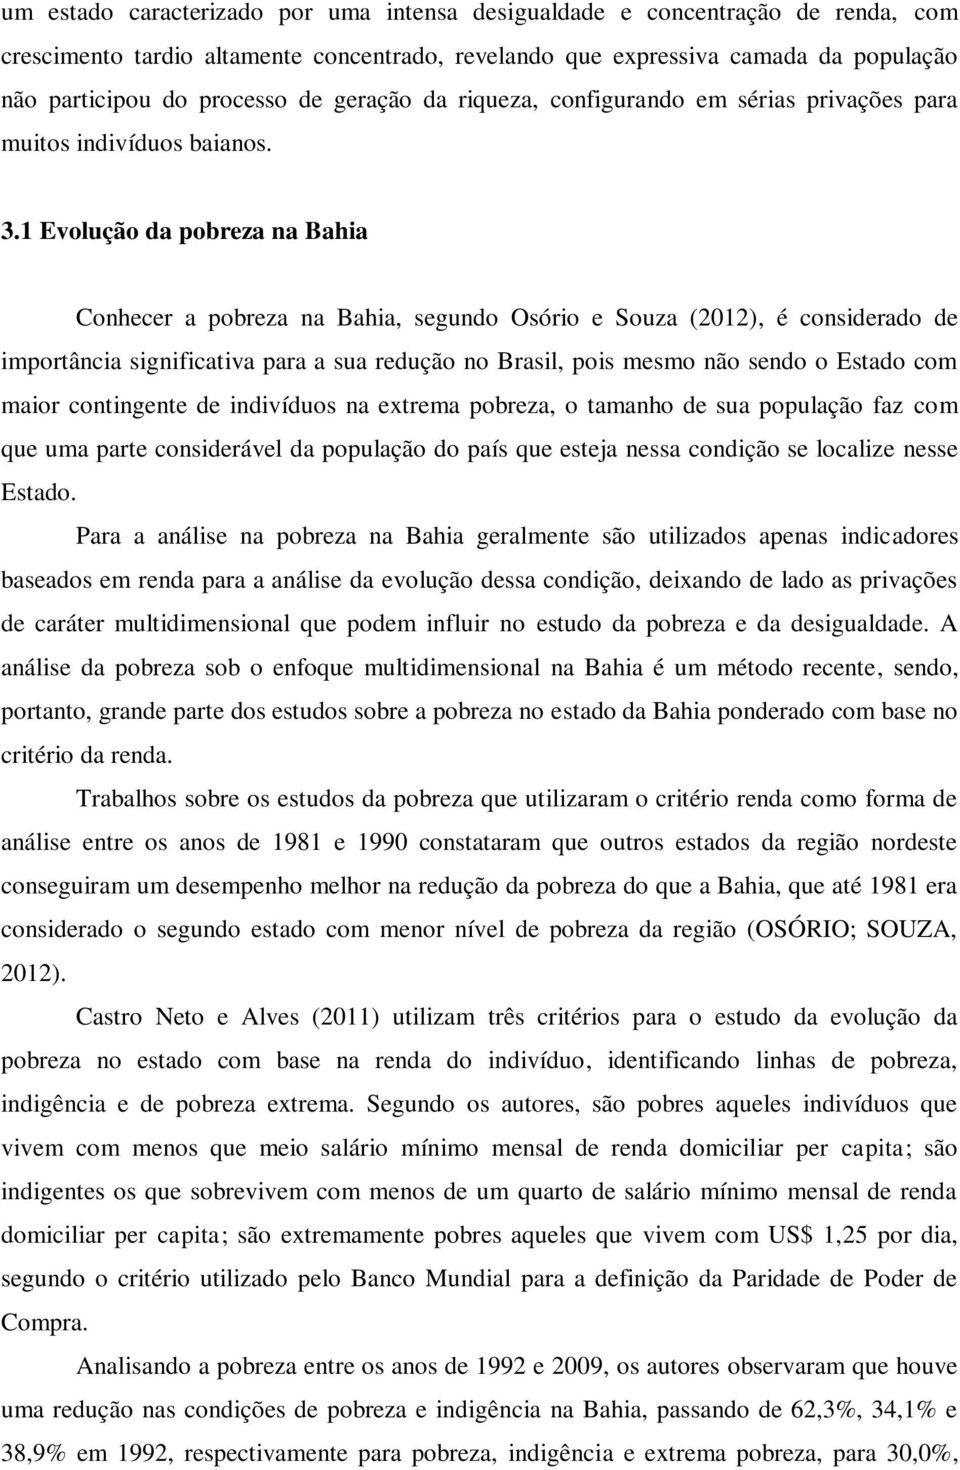 1 Evolução da pobreza na Bahia Conhecer a pobreza na Bahia, segundo Osório e Souza (2012), é considerado de importância significativa para a sua redução no Brasil, pois mesmo não sendo o Estado com